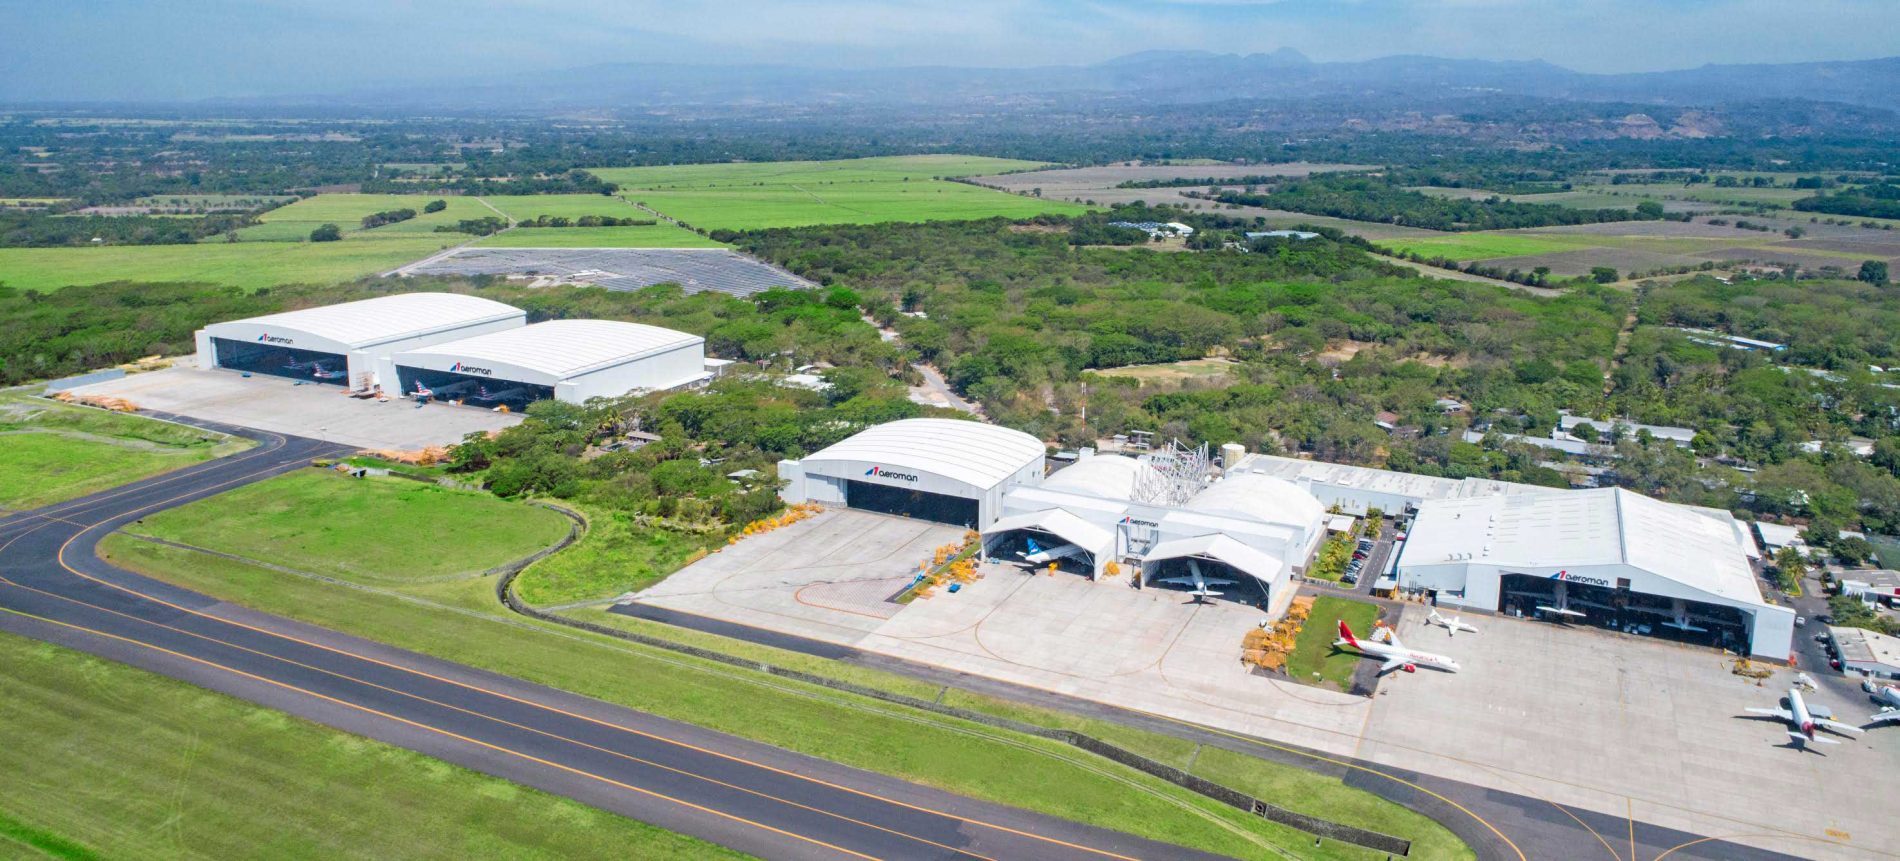 Aeroman se convierte en el mayor centro de mantenimiento aeronáutico de Latinoamérica